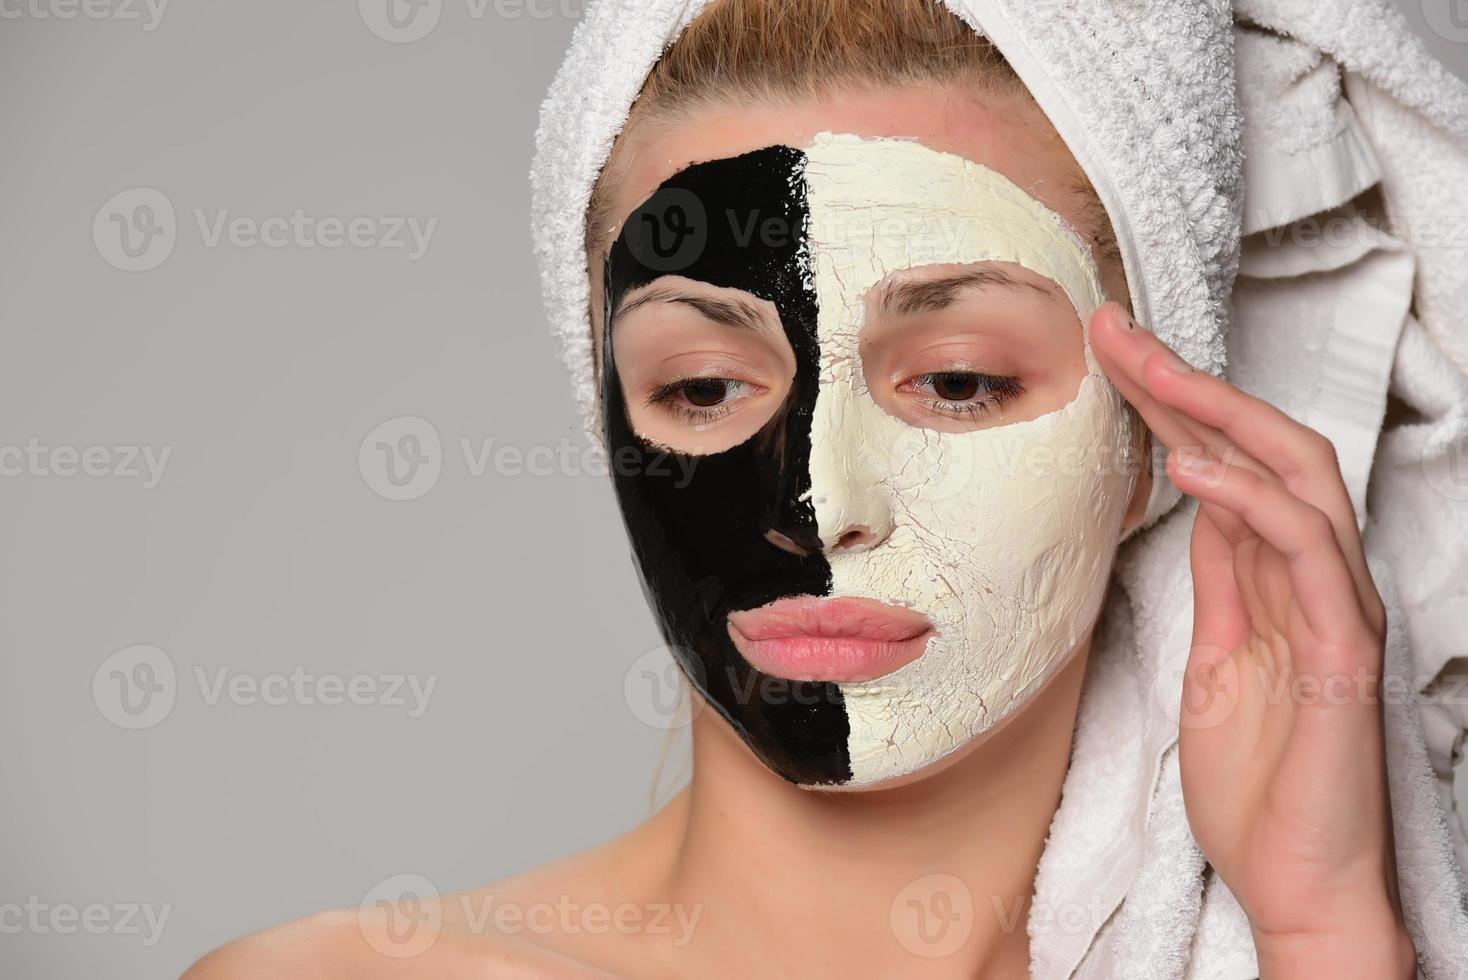 hermosa modelo femenina con máscara cosmética facial en blanco y negro foto